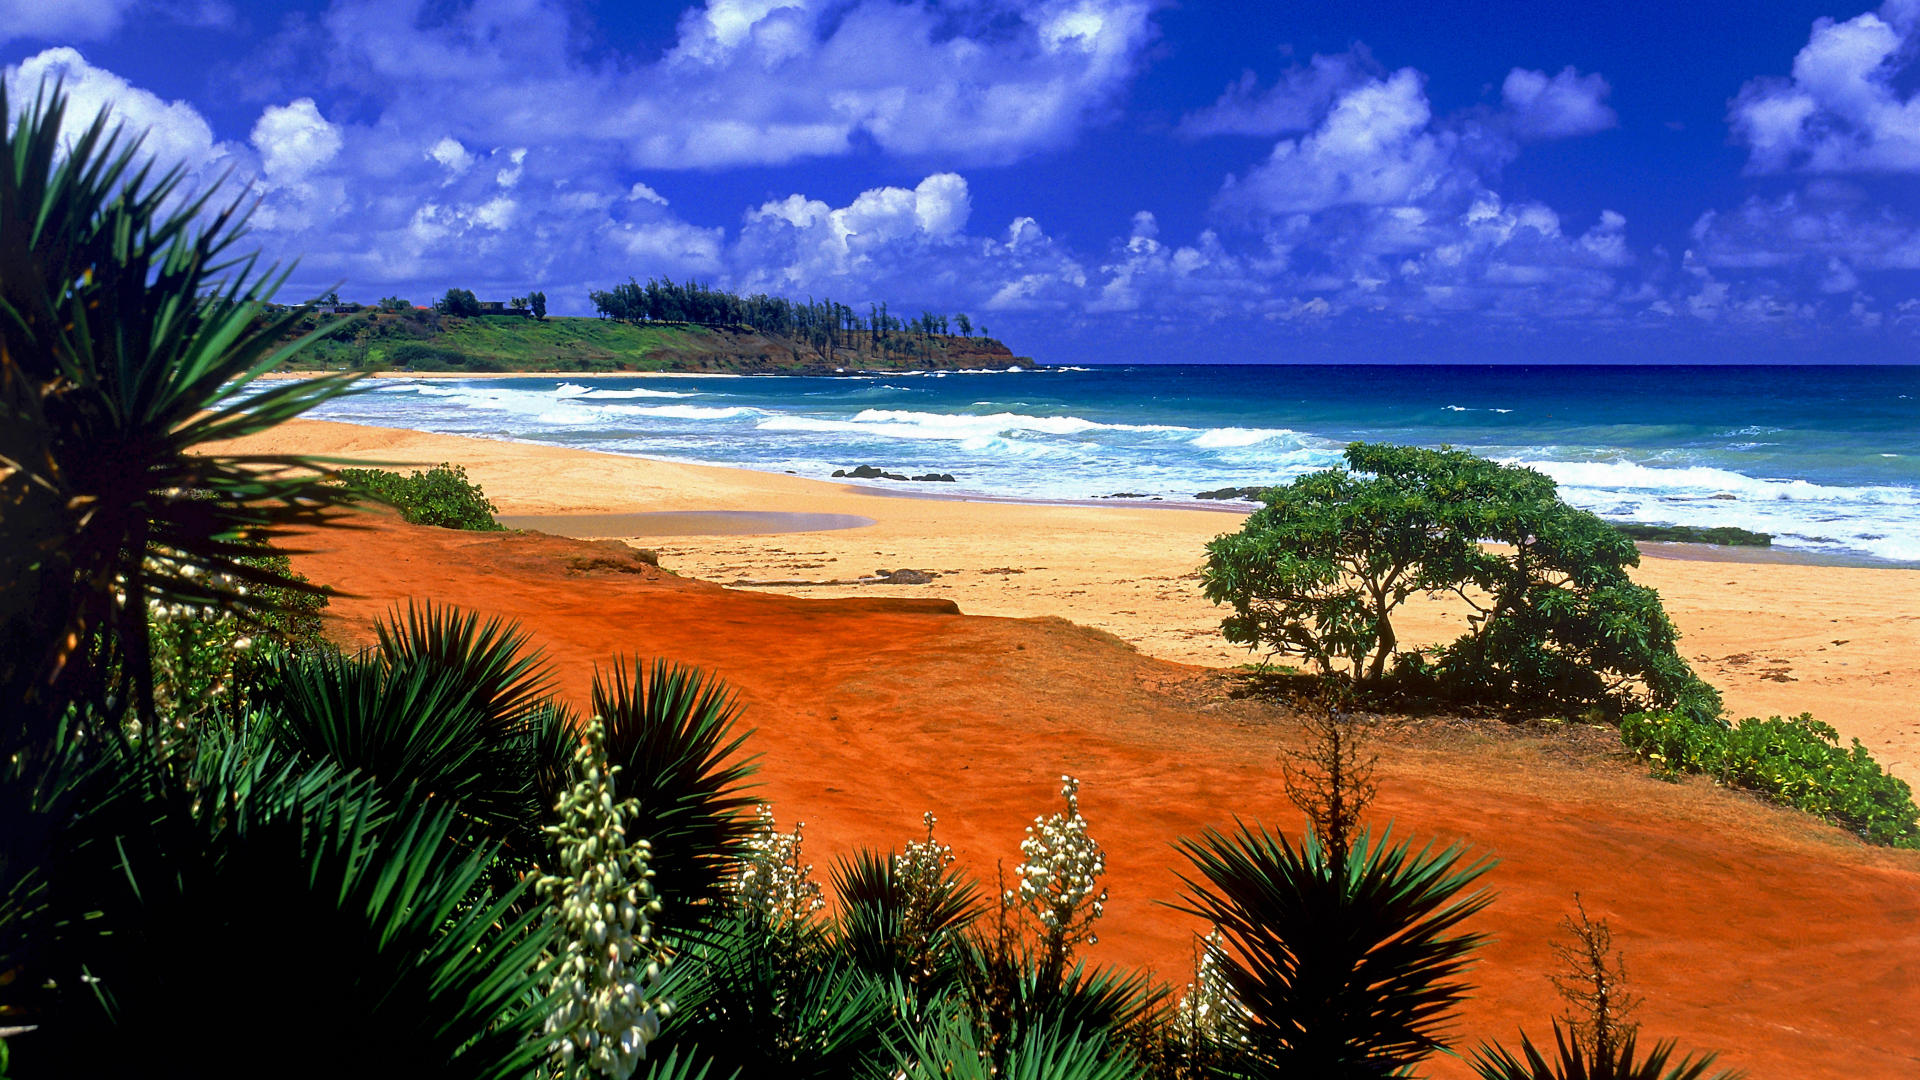  Backgrounds and Wallpaper   Kealia Beach Kauai Hawaii   Always Free